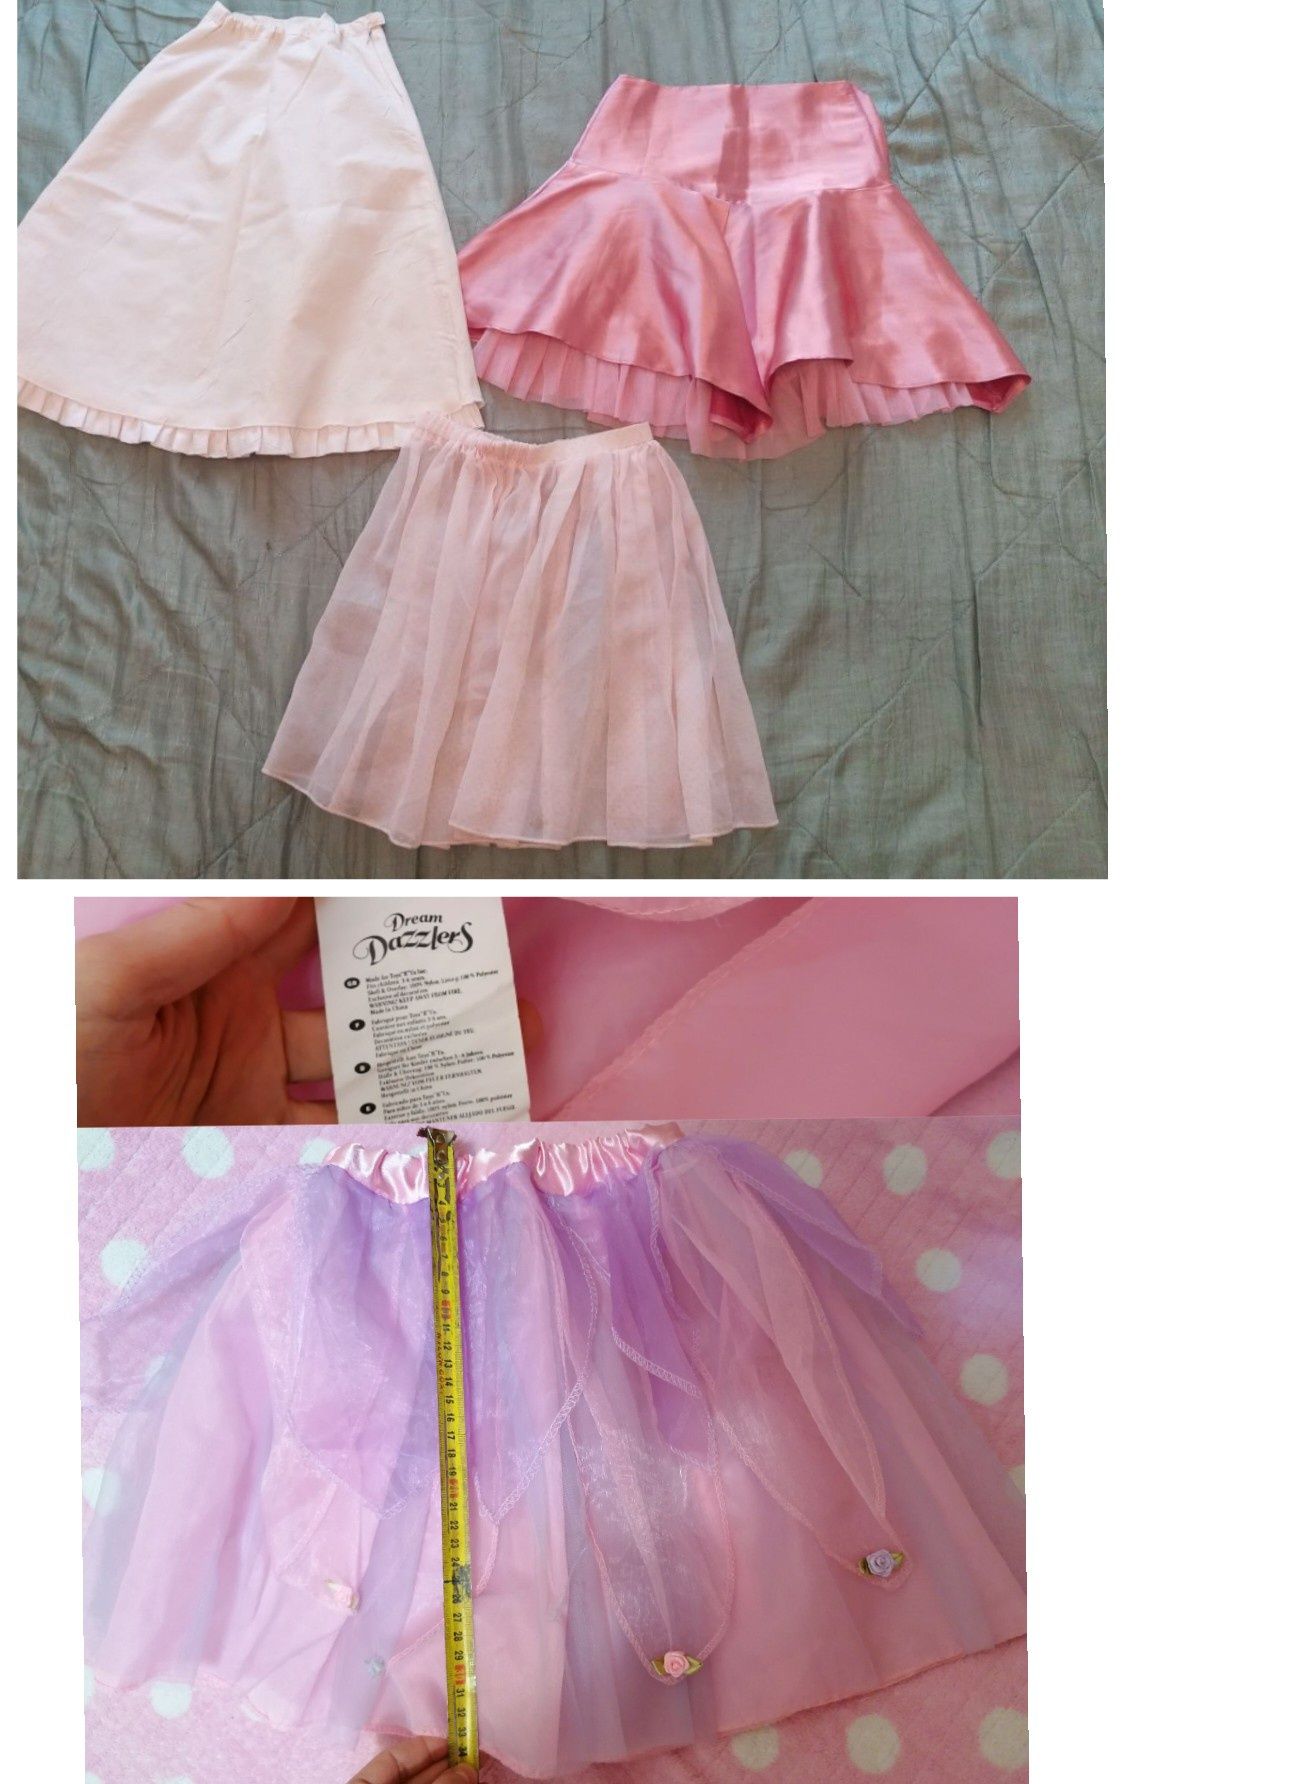 Спідничка нарядна пишна рожева на дівчинку гіпюрова атласна юбка